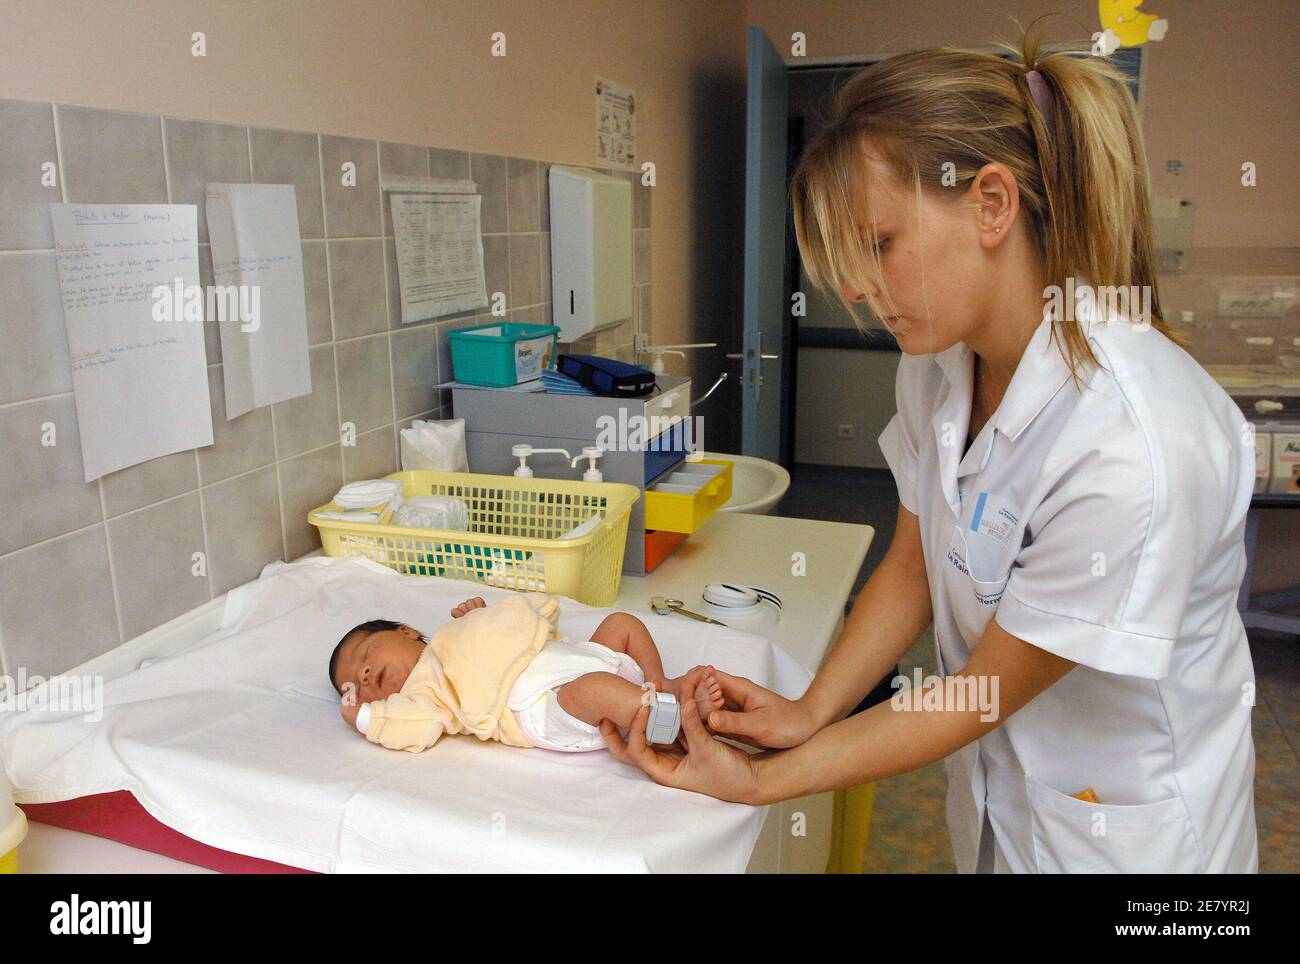 Un'infermiera mette un braccialetto elettronico alla caviglia di un neonato  presso l'ospedale intercomunale di le Raincy-Montfermeil, a nord di Parigi,  il 12 aprile 2007. Questo ospedale di maternità dei sobborghi parigini che